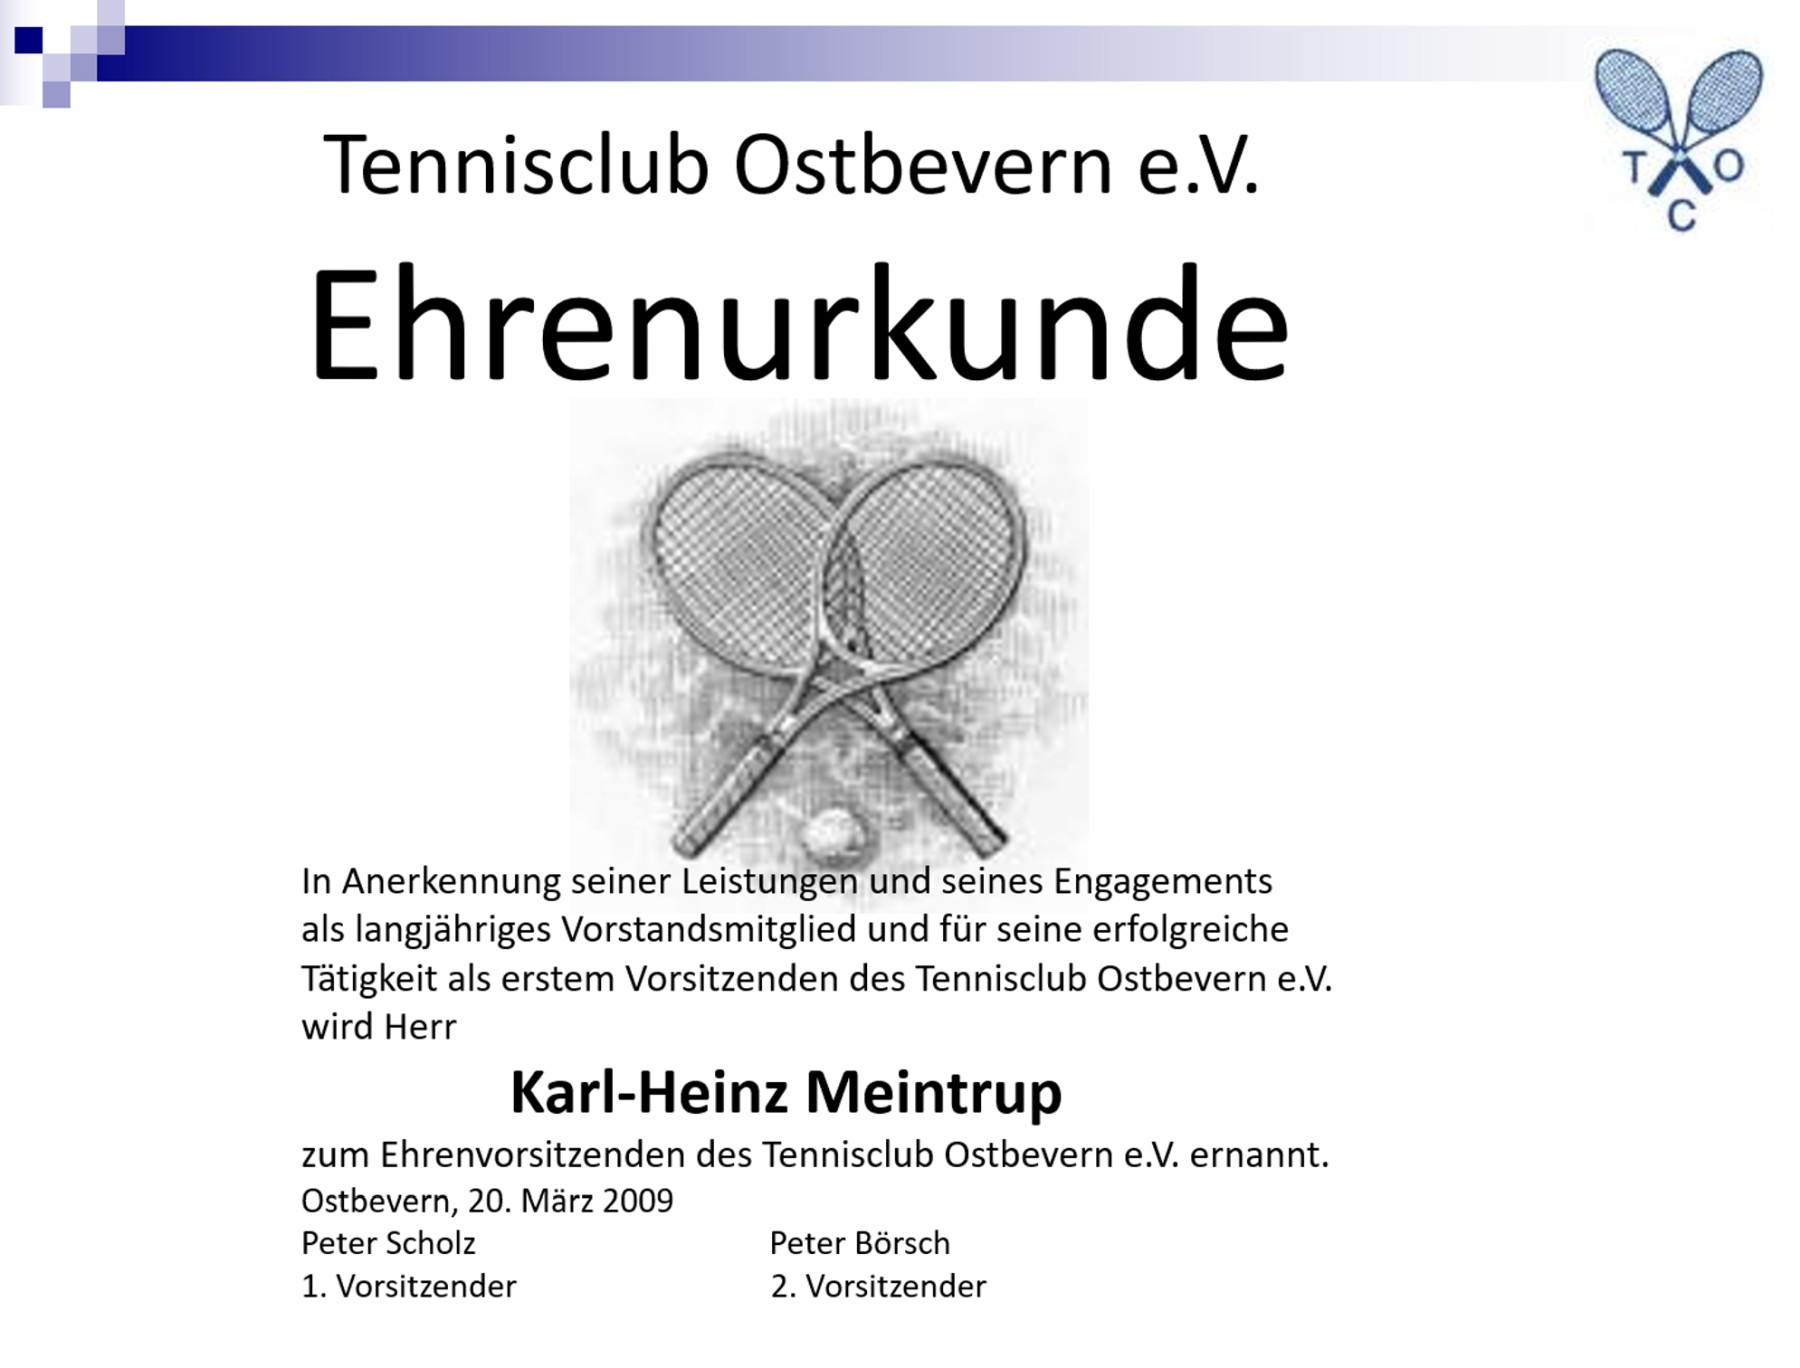 Ehrenurkunde_Karl-Heinz-Meintrup